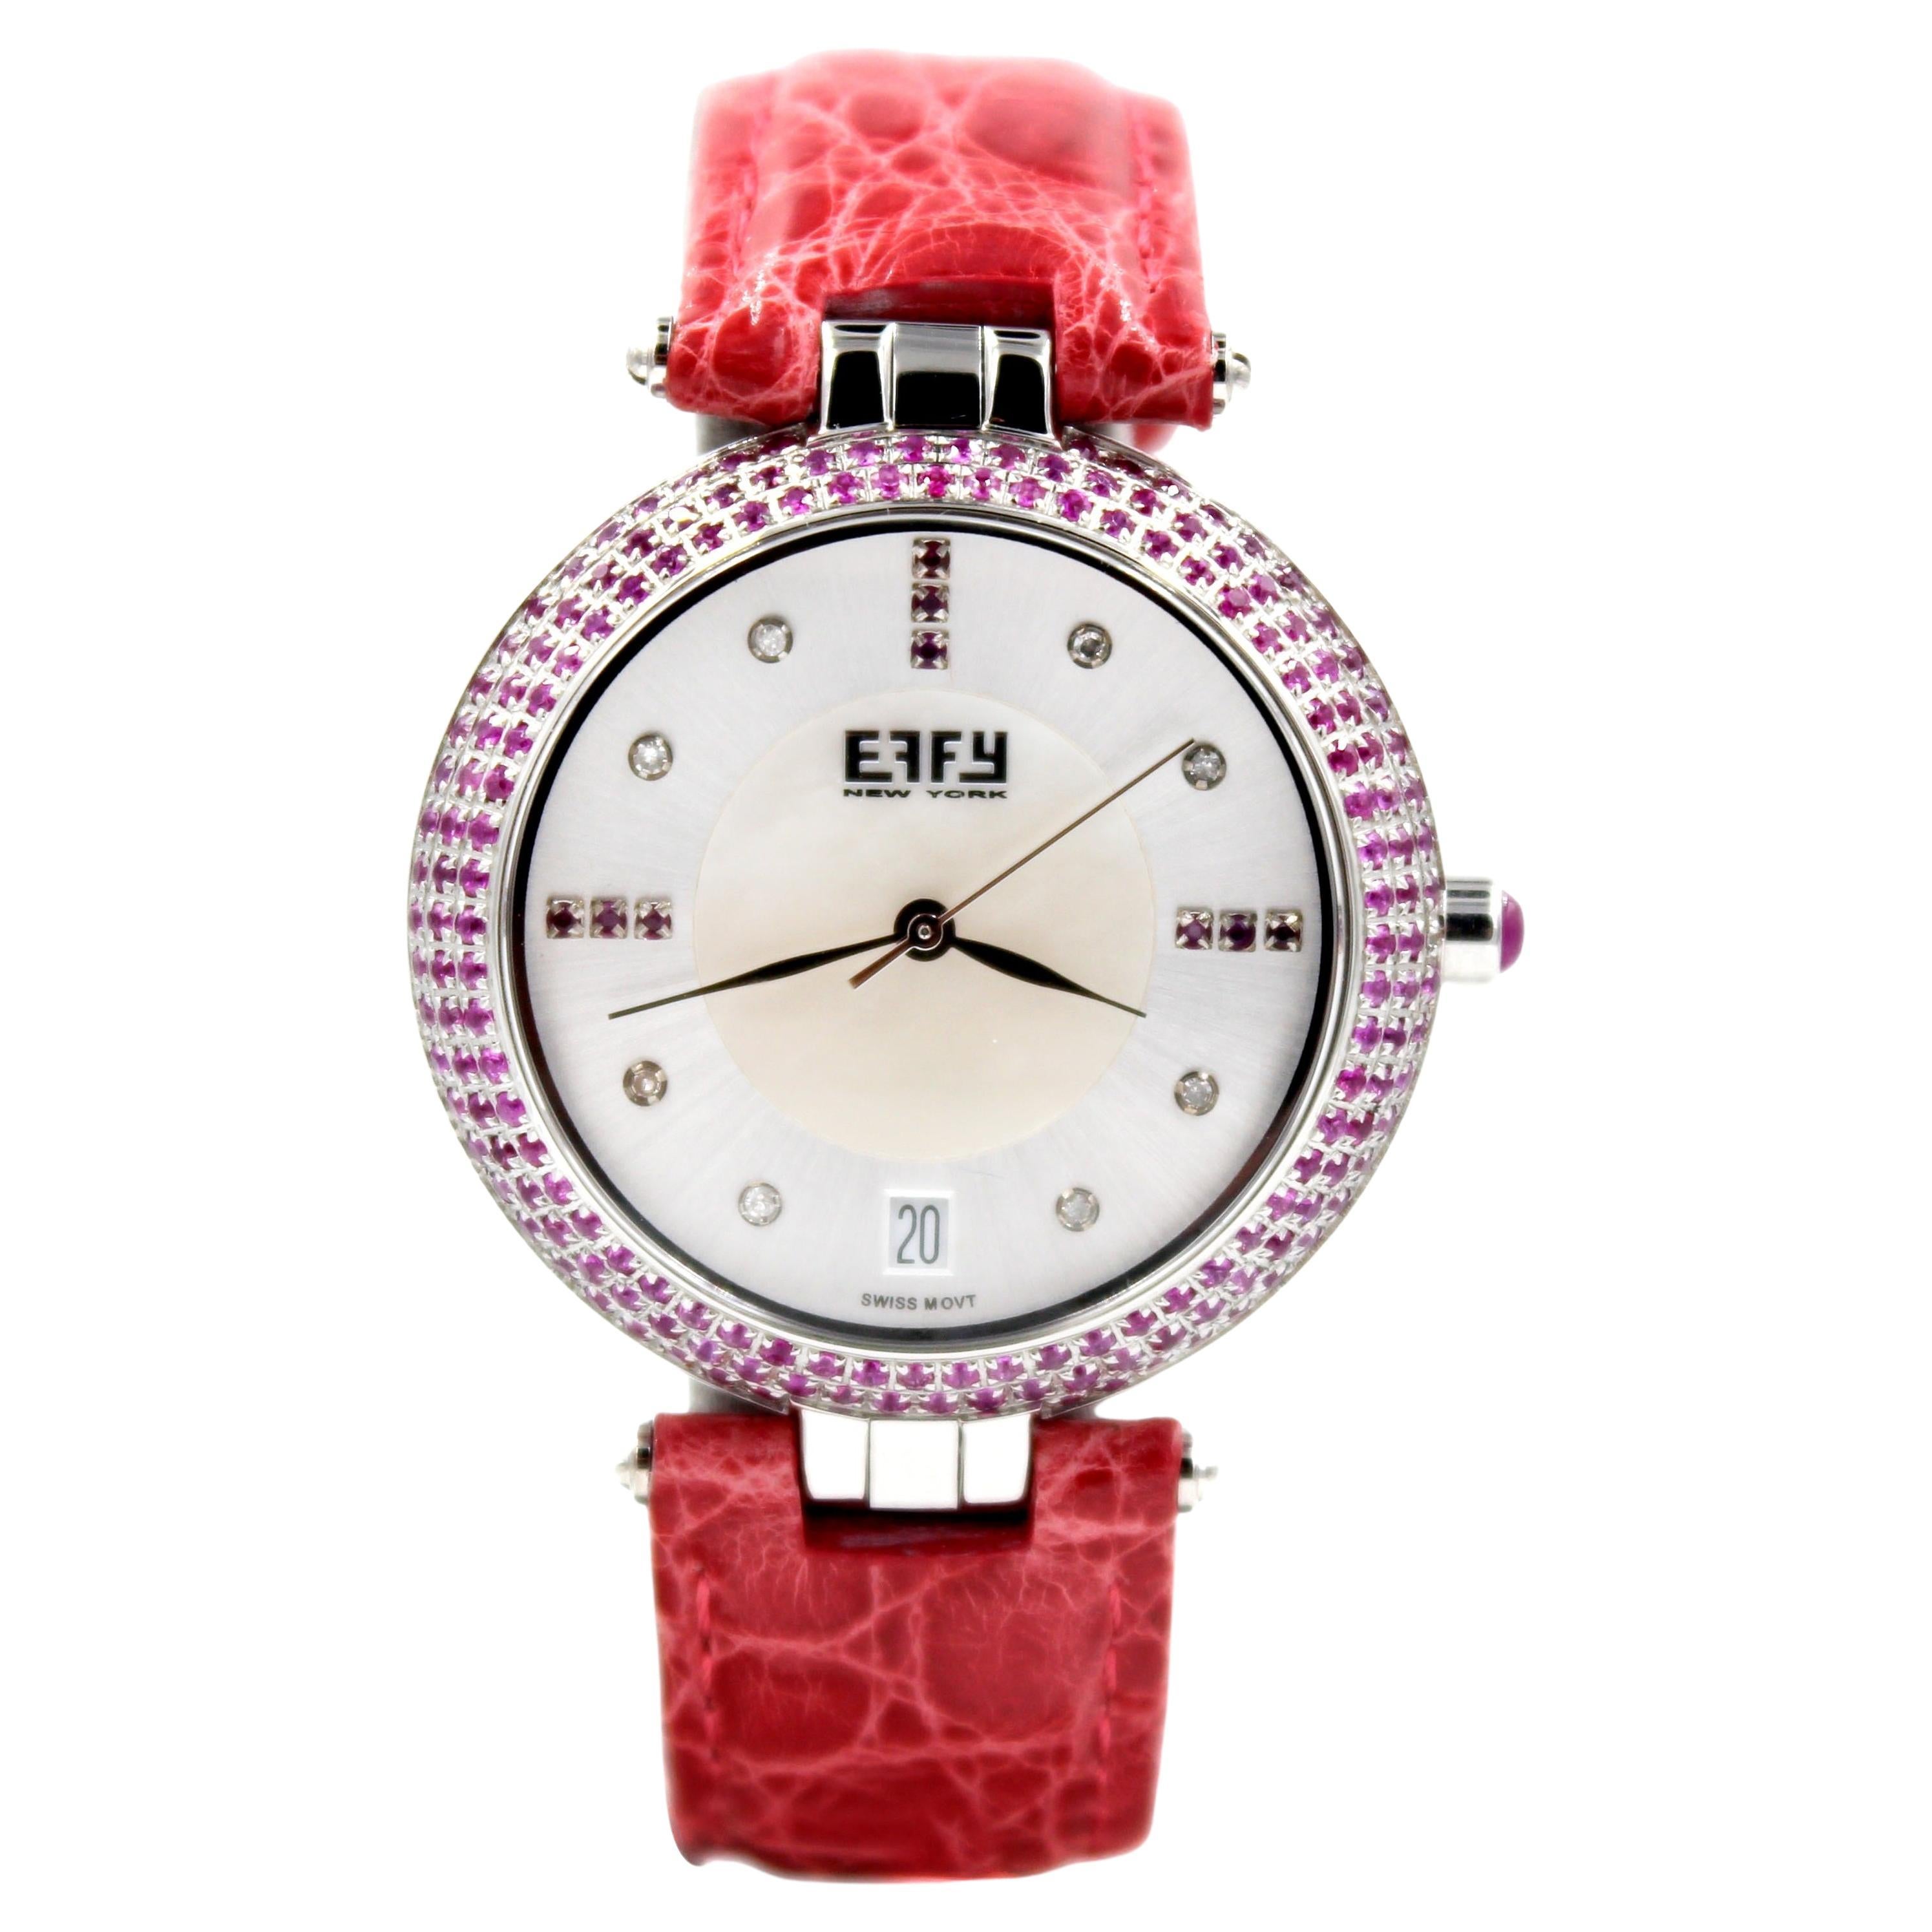 Montre de luxe à quartz suisse avec bracelet en cuir exotique, cadran en saphir rose et pavé de diamants